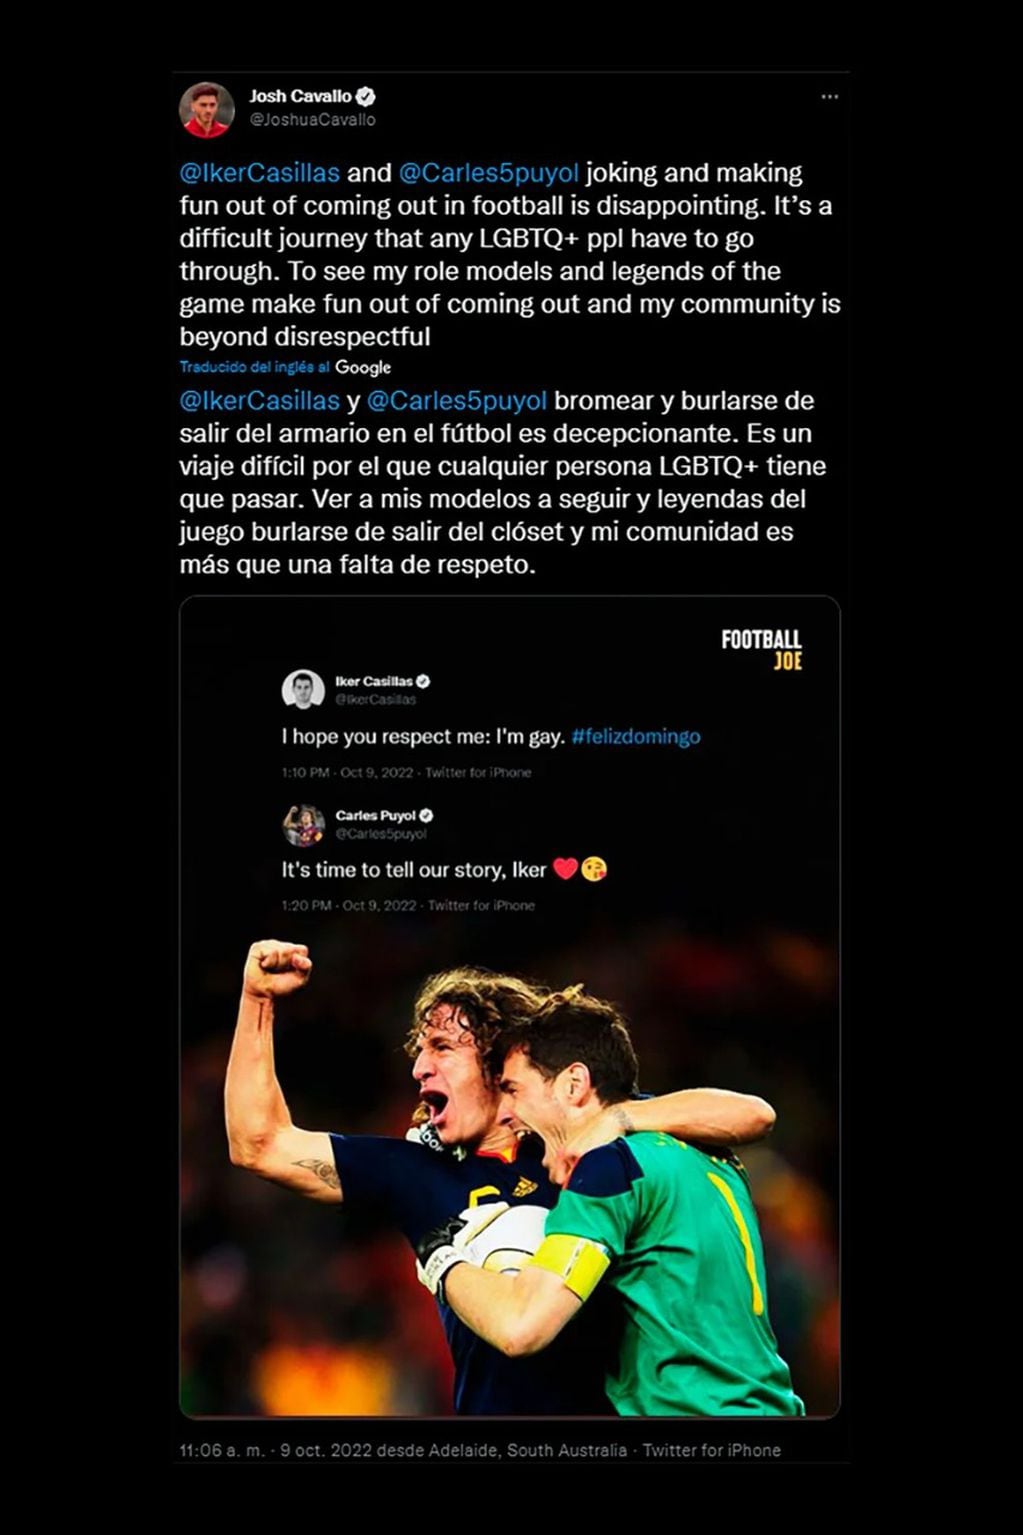 El repudio de Josh Cavallo a los tuits de Casillas y Puyol.